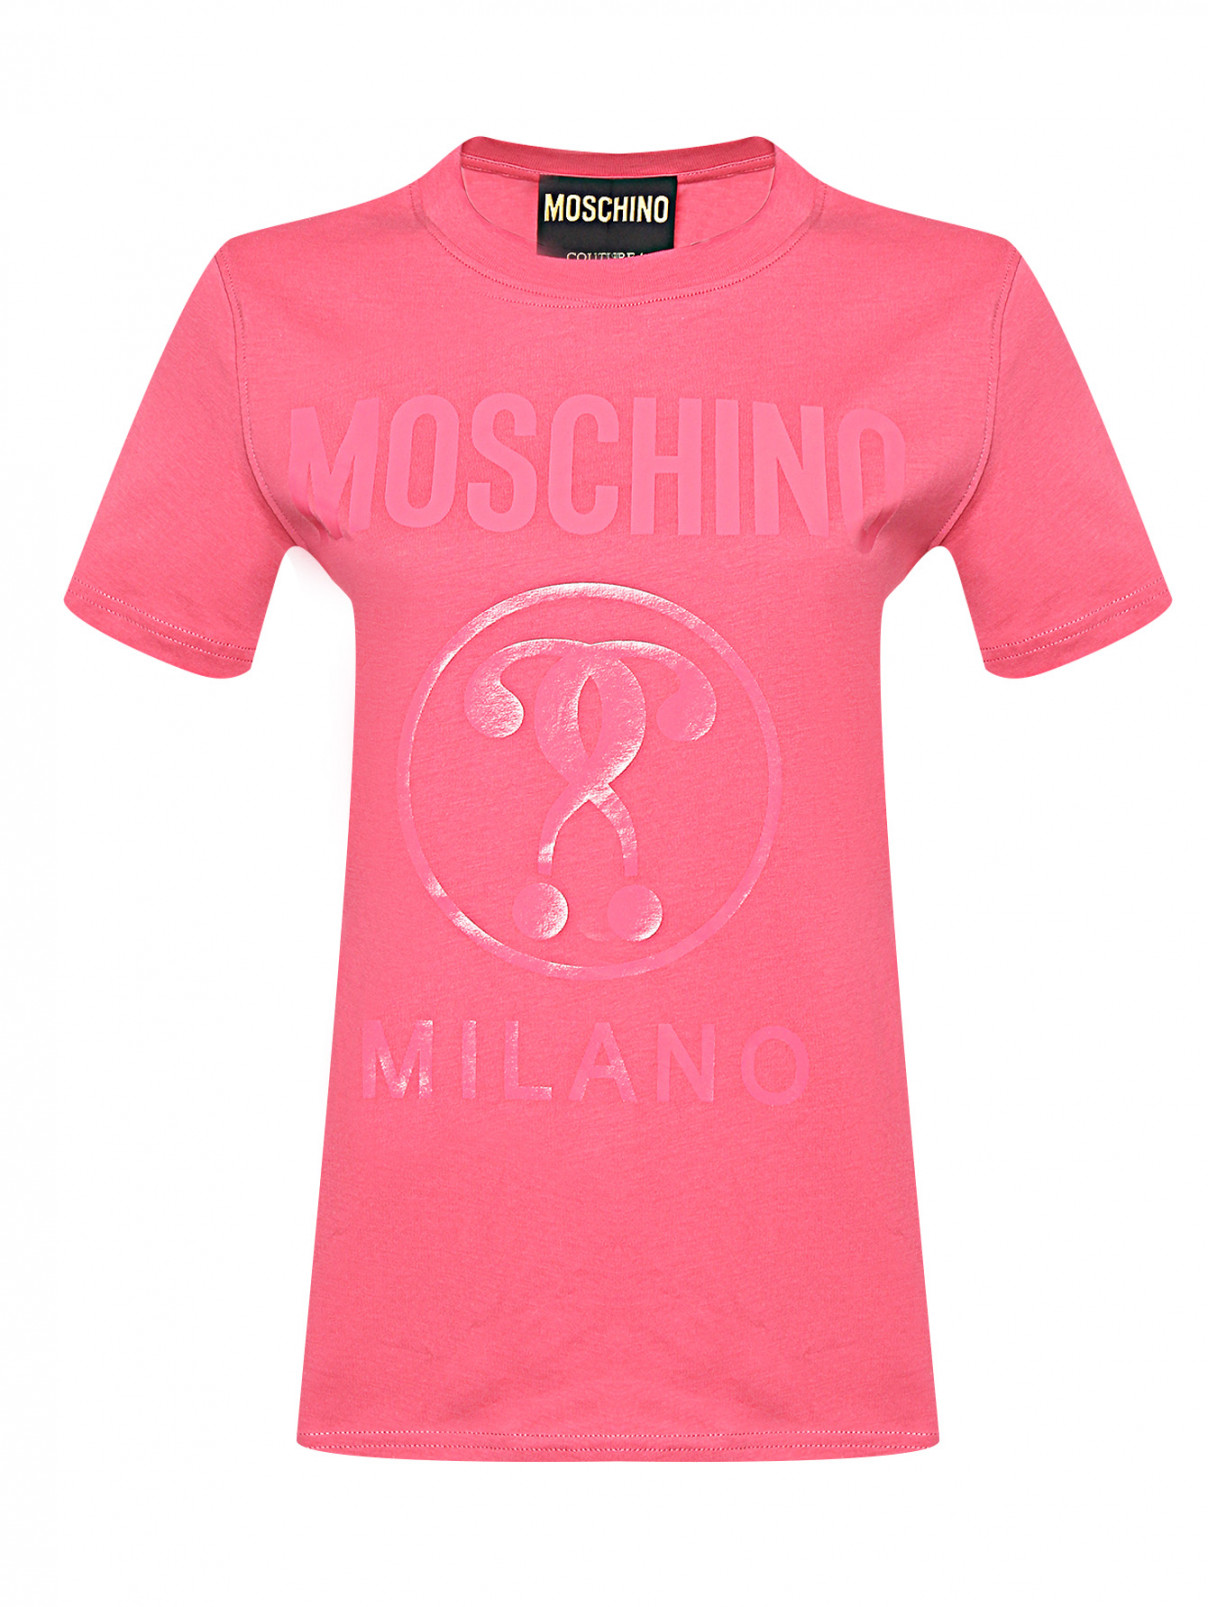 Футболка из хлопка с принтом Moschino  –  Общий вид  – Цвет:  Розовый